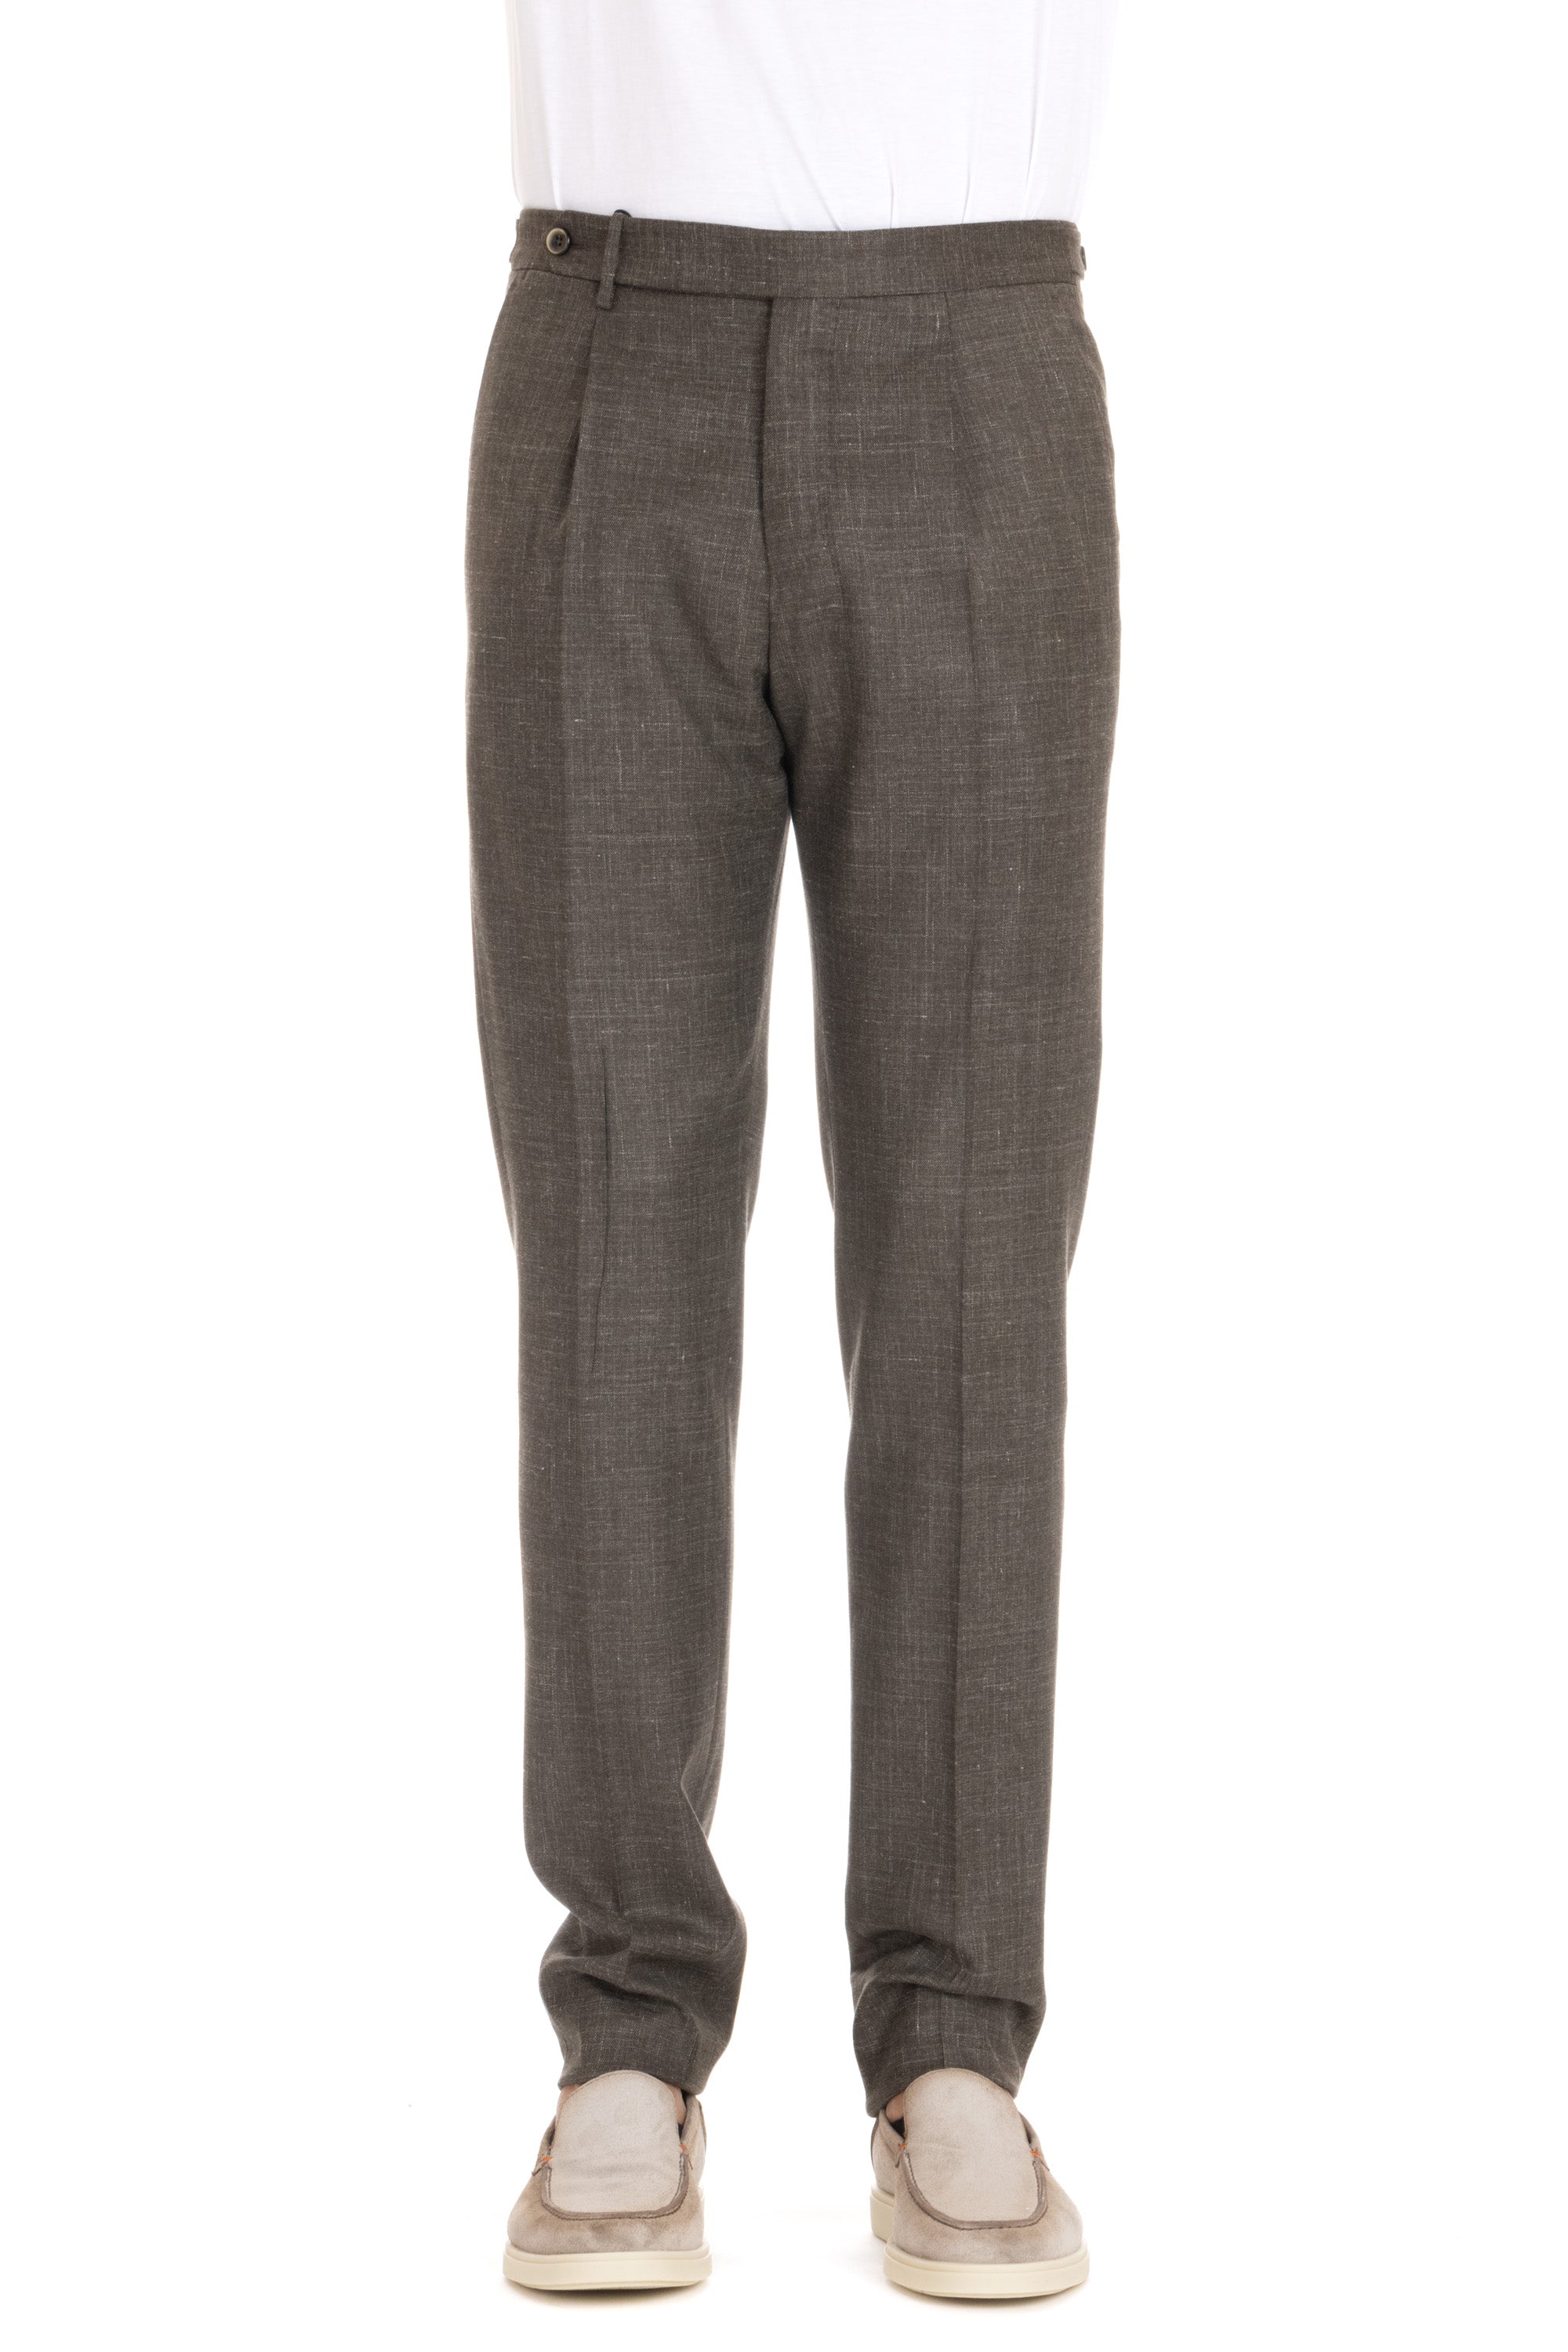 Pantalone in lana-seta-lino Gentleman fit